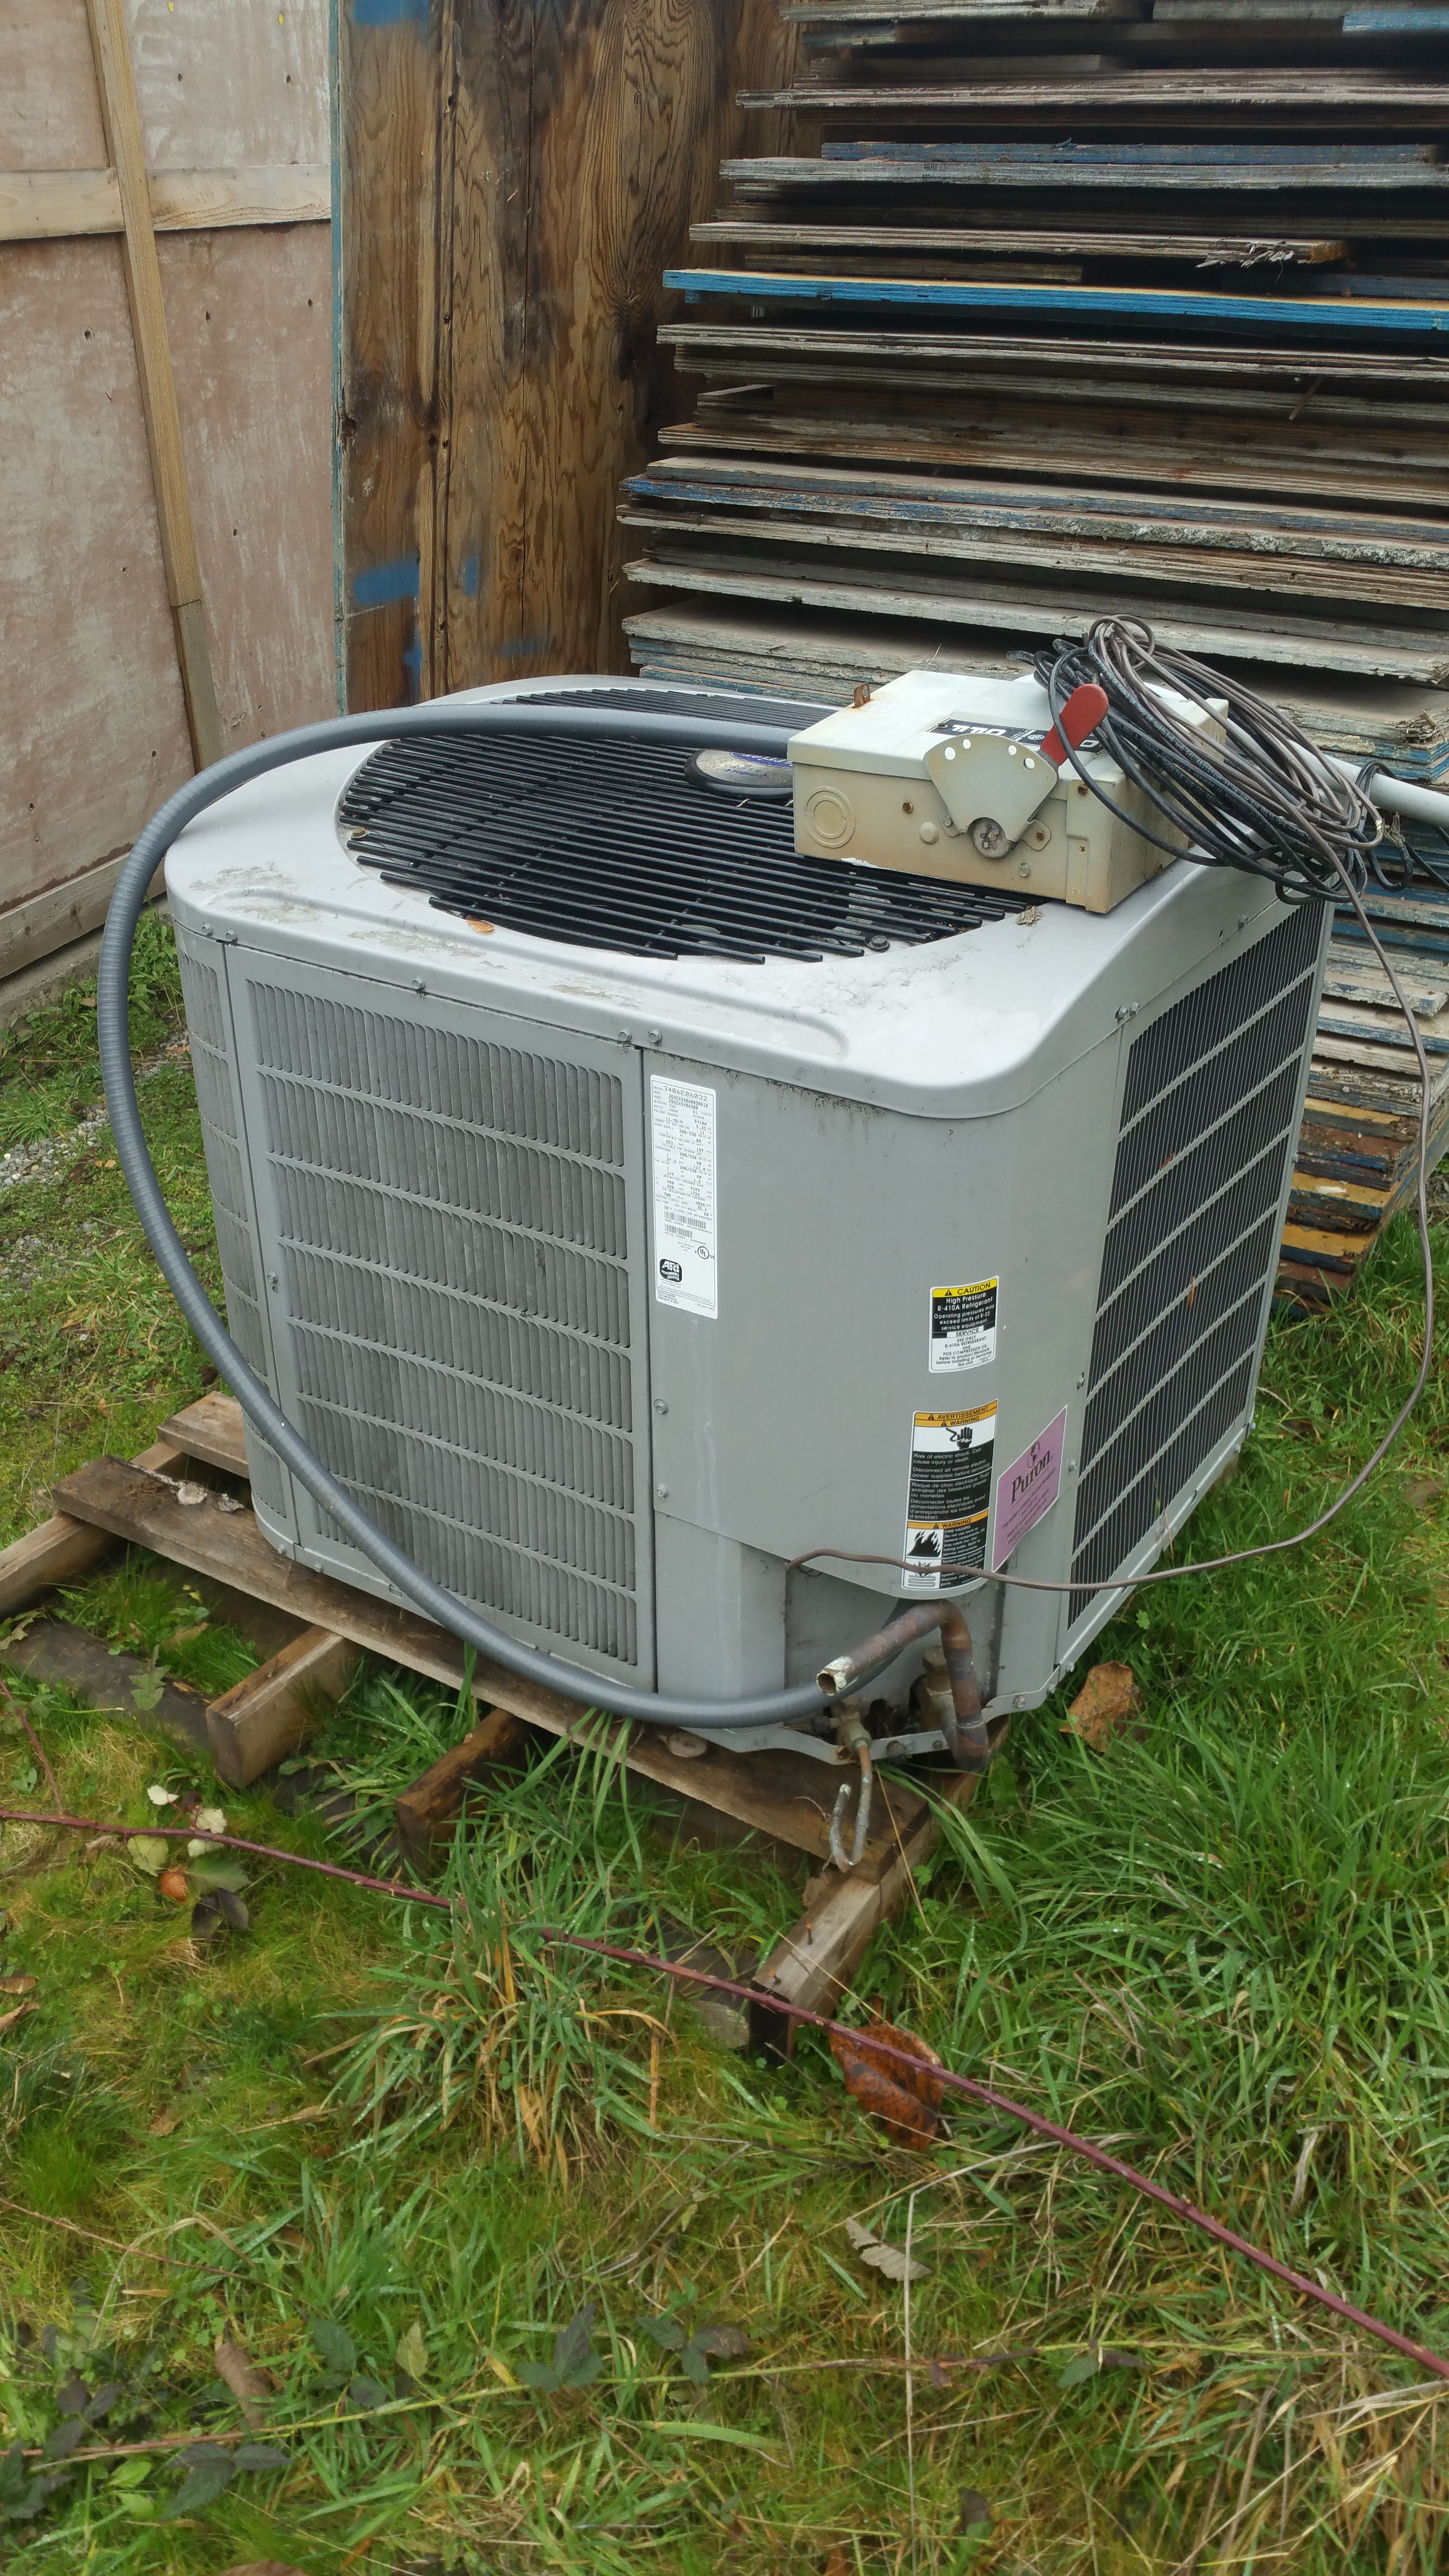 Heat pump condenser